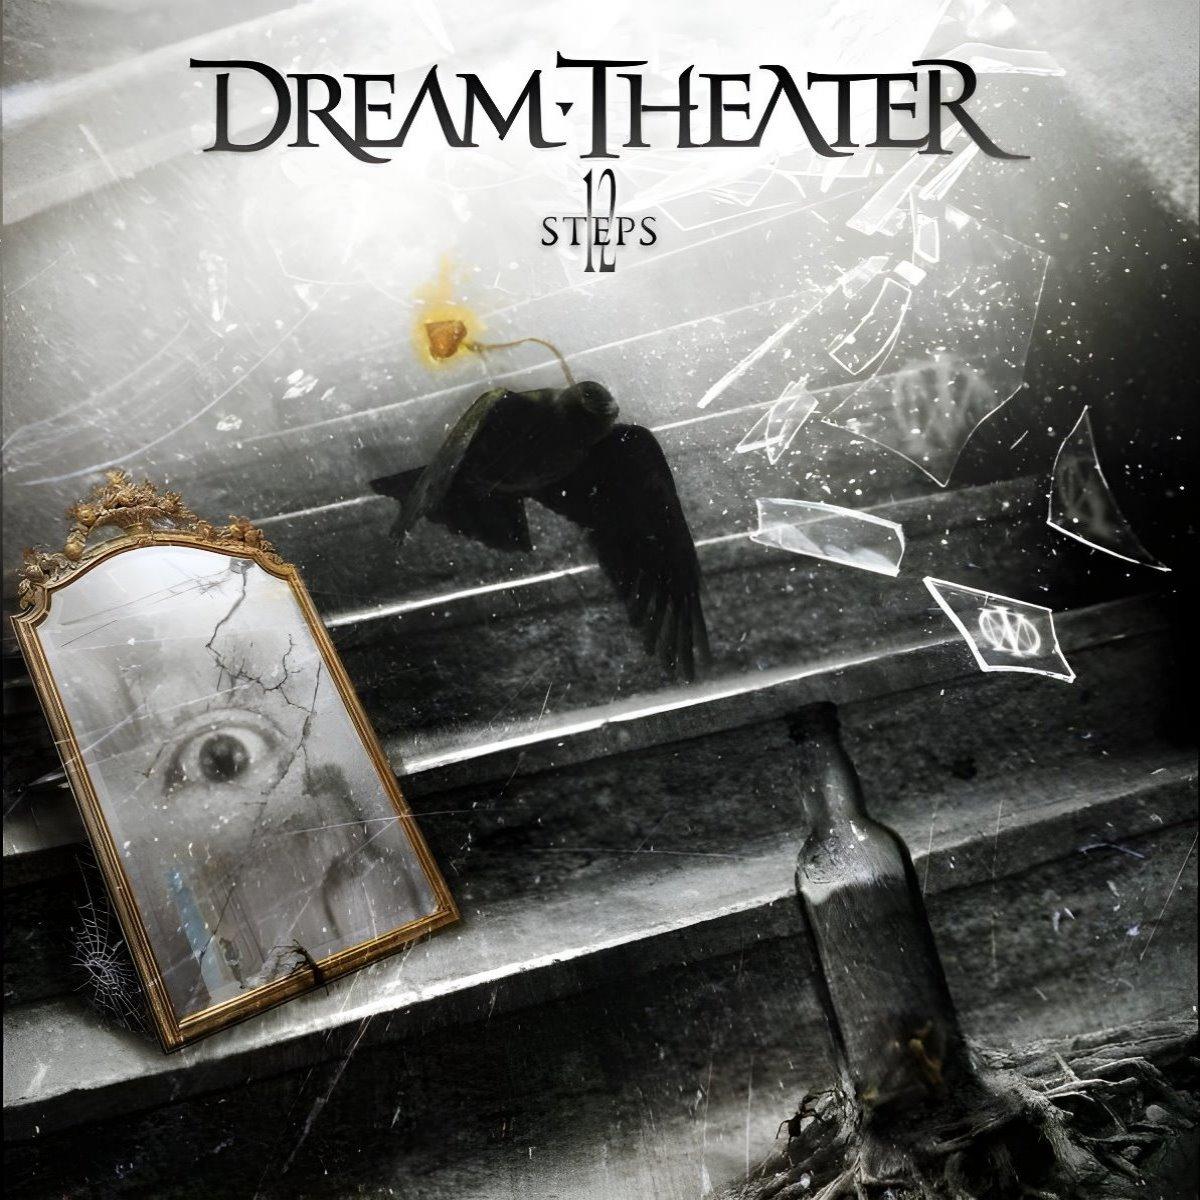 Альбом theatre dreams. Dream Theater альбомы. Дрим театр альбомы. Dream Theater обложки альбомов. Dream Theater 92.